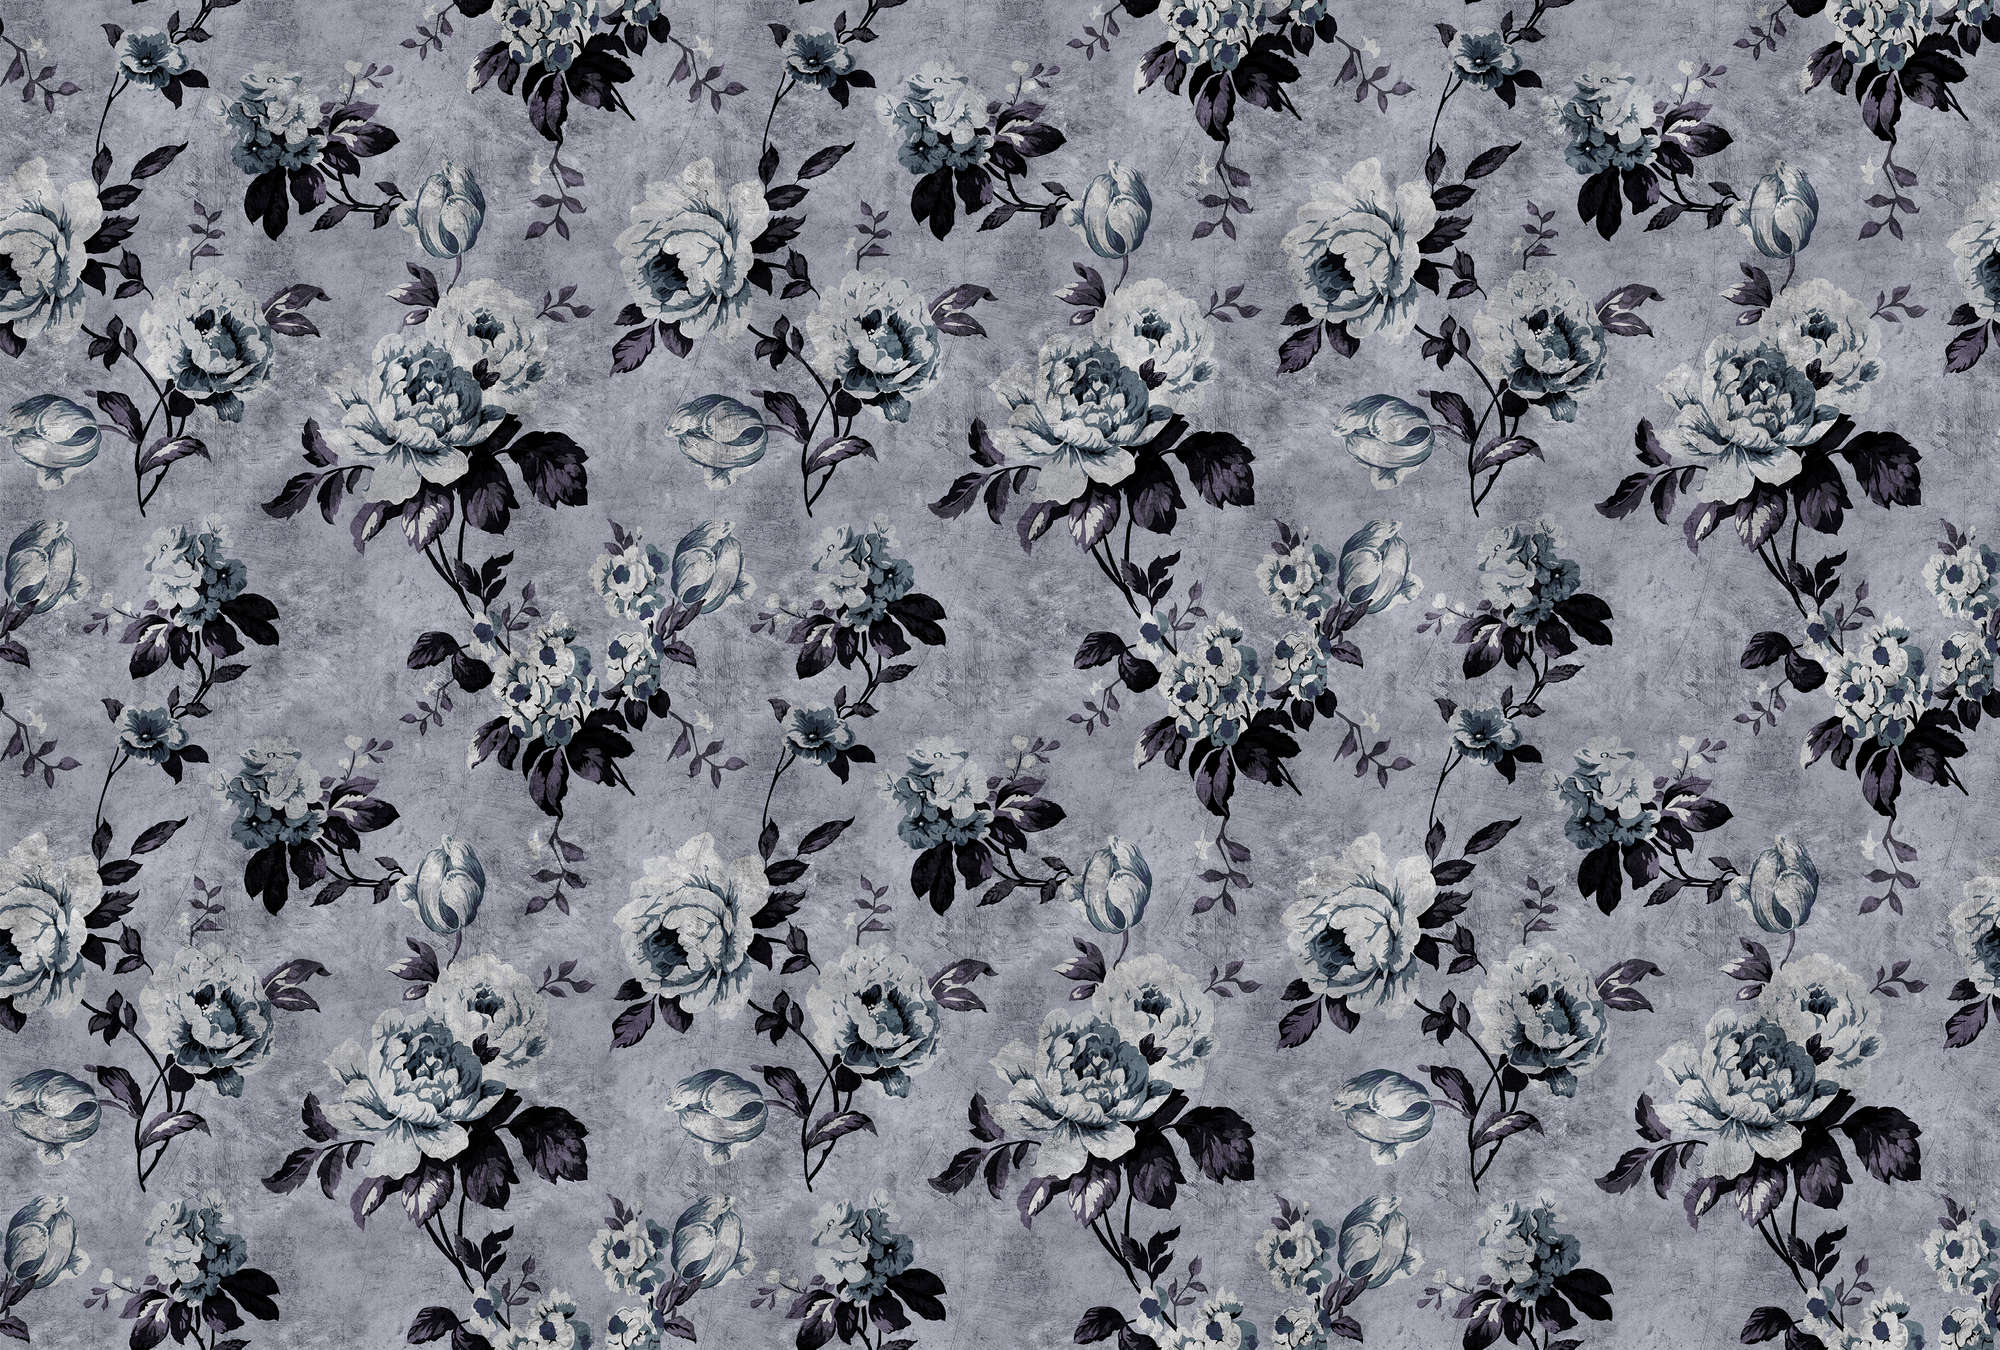             Wild roses 6 - Papel pintado Rosa en estilo retro, gris en estructura rayada - Azul, Violeta | Tejido no tejido liso mate
        